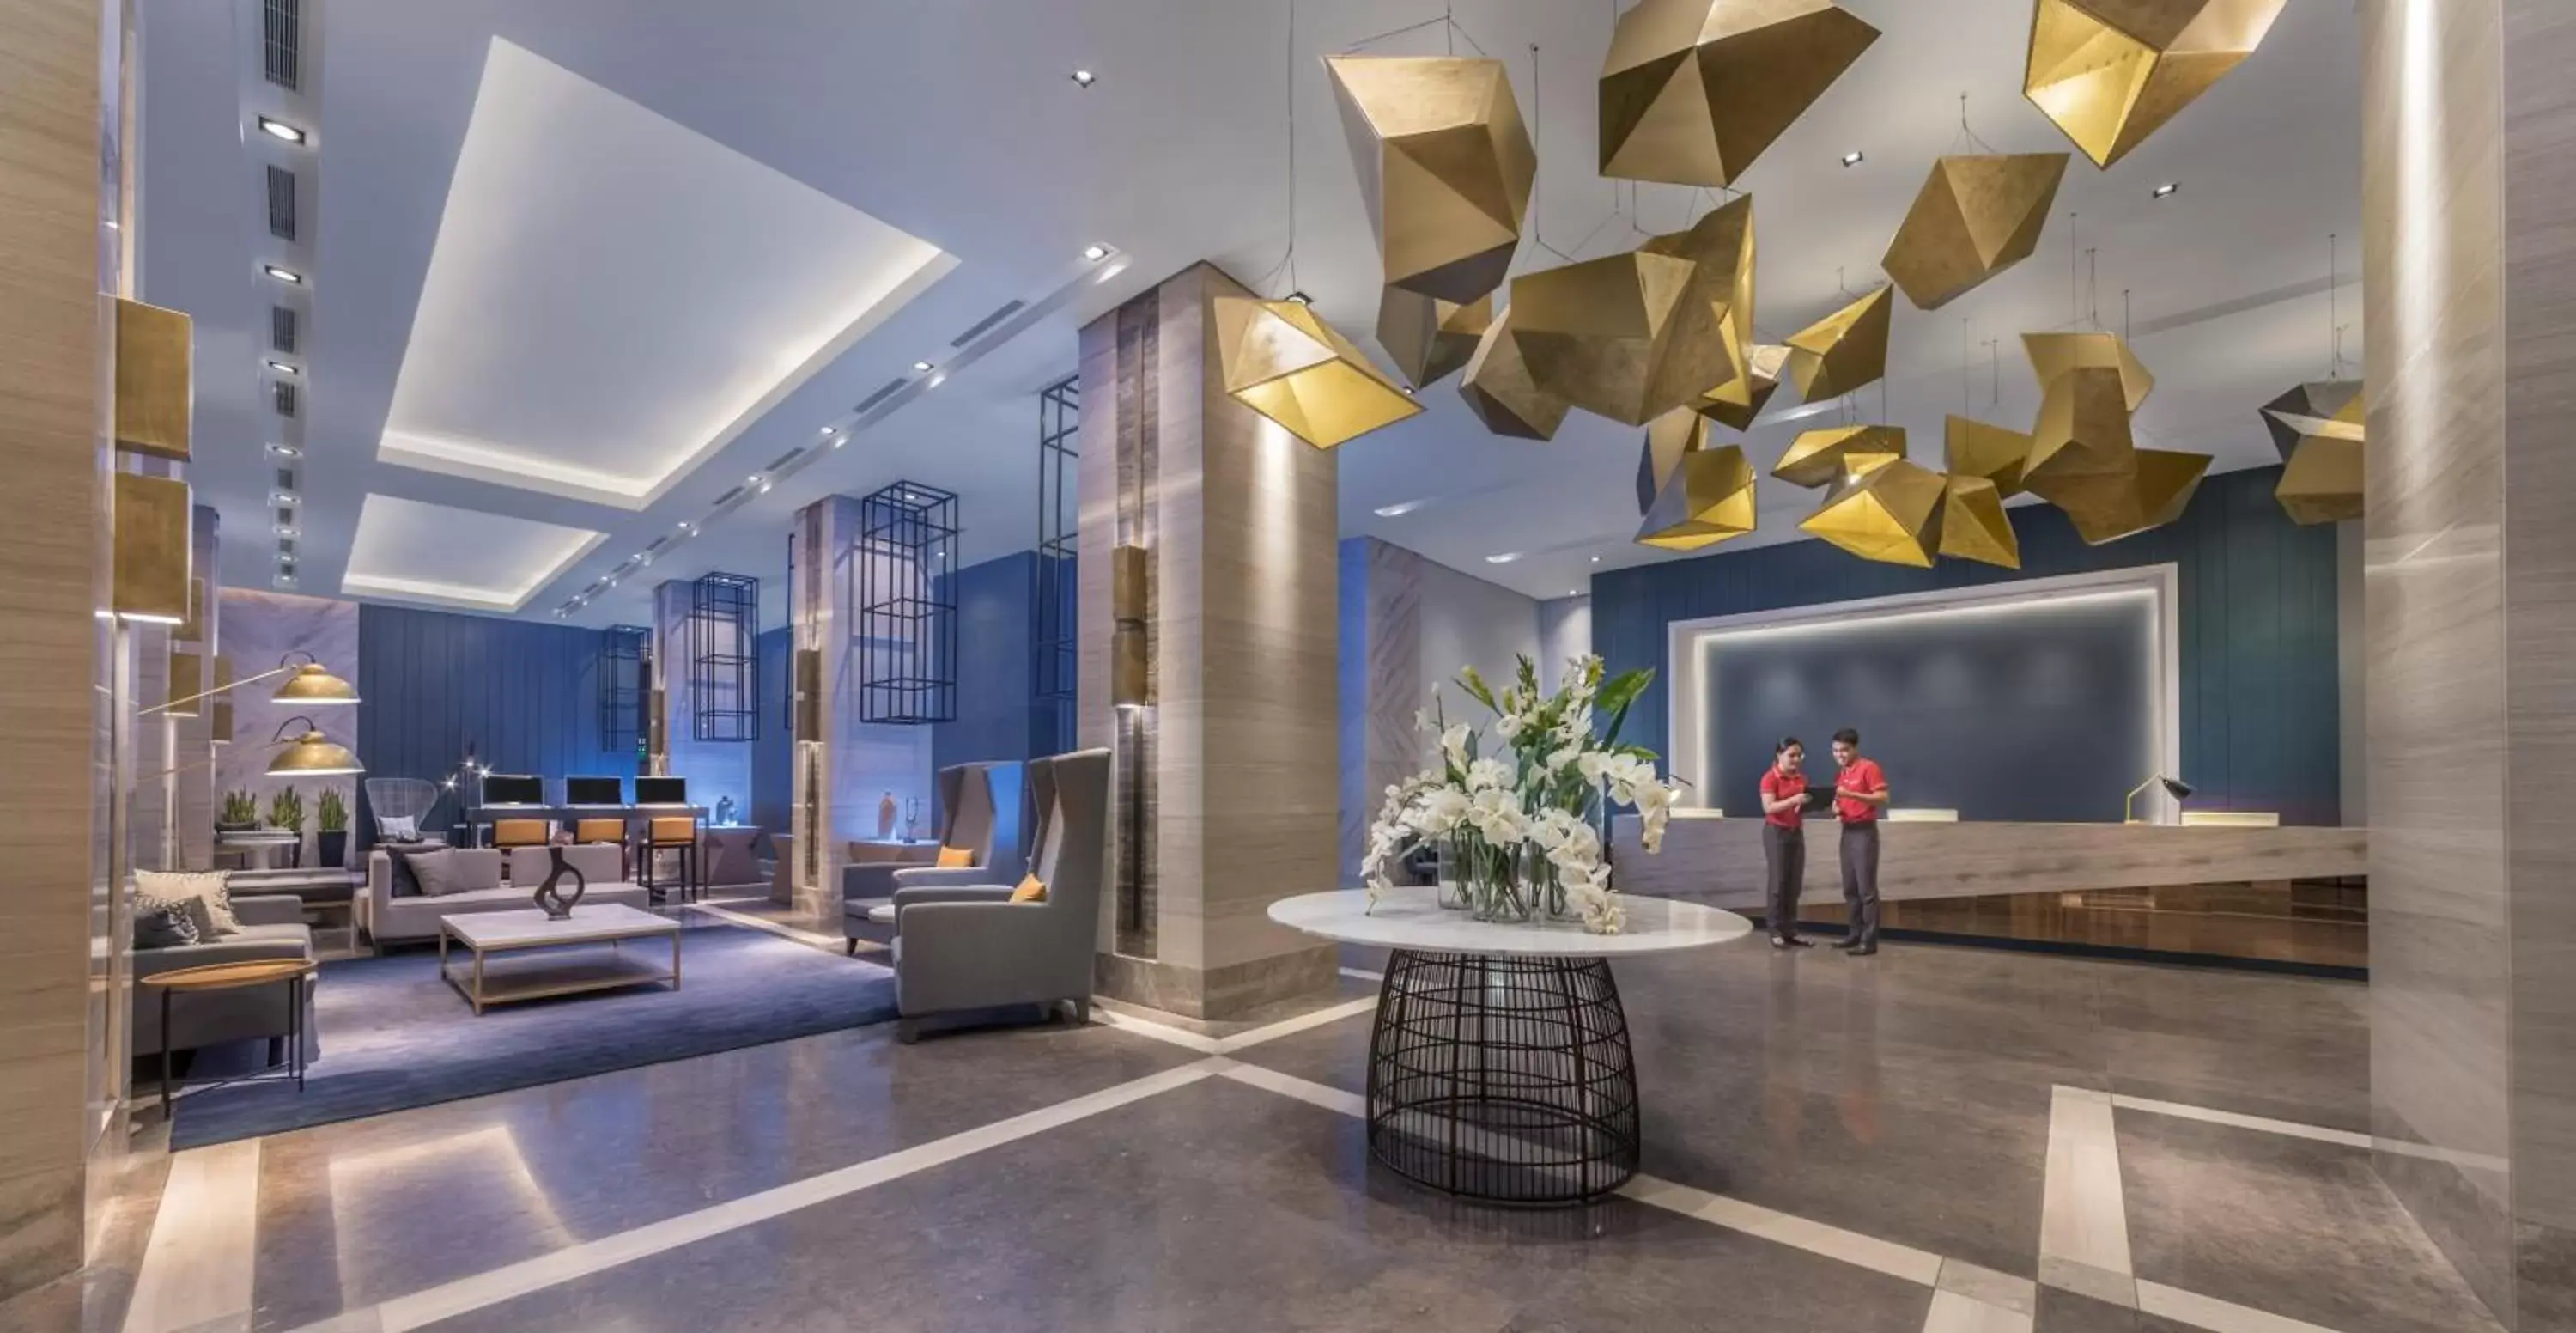 Lobby or reception, Lobby/Reception in Summit Galleria Cebu - Multiple Use Hotel